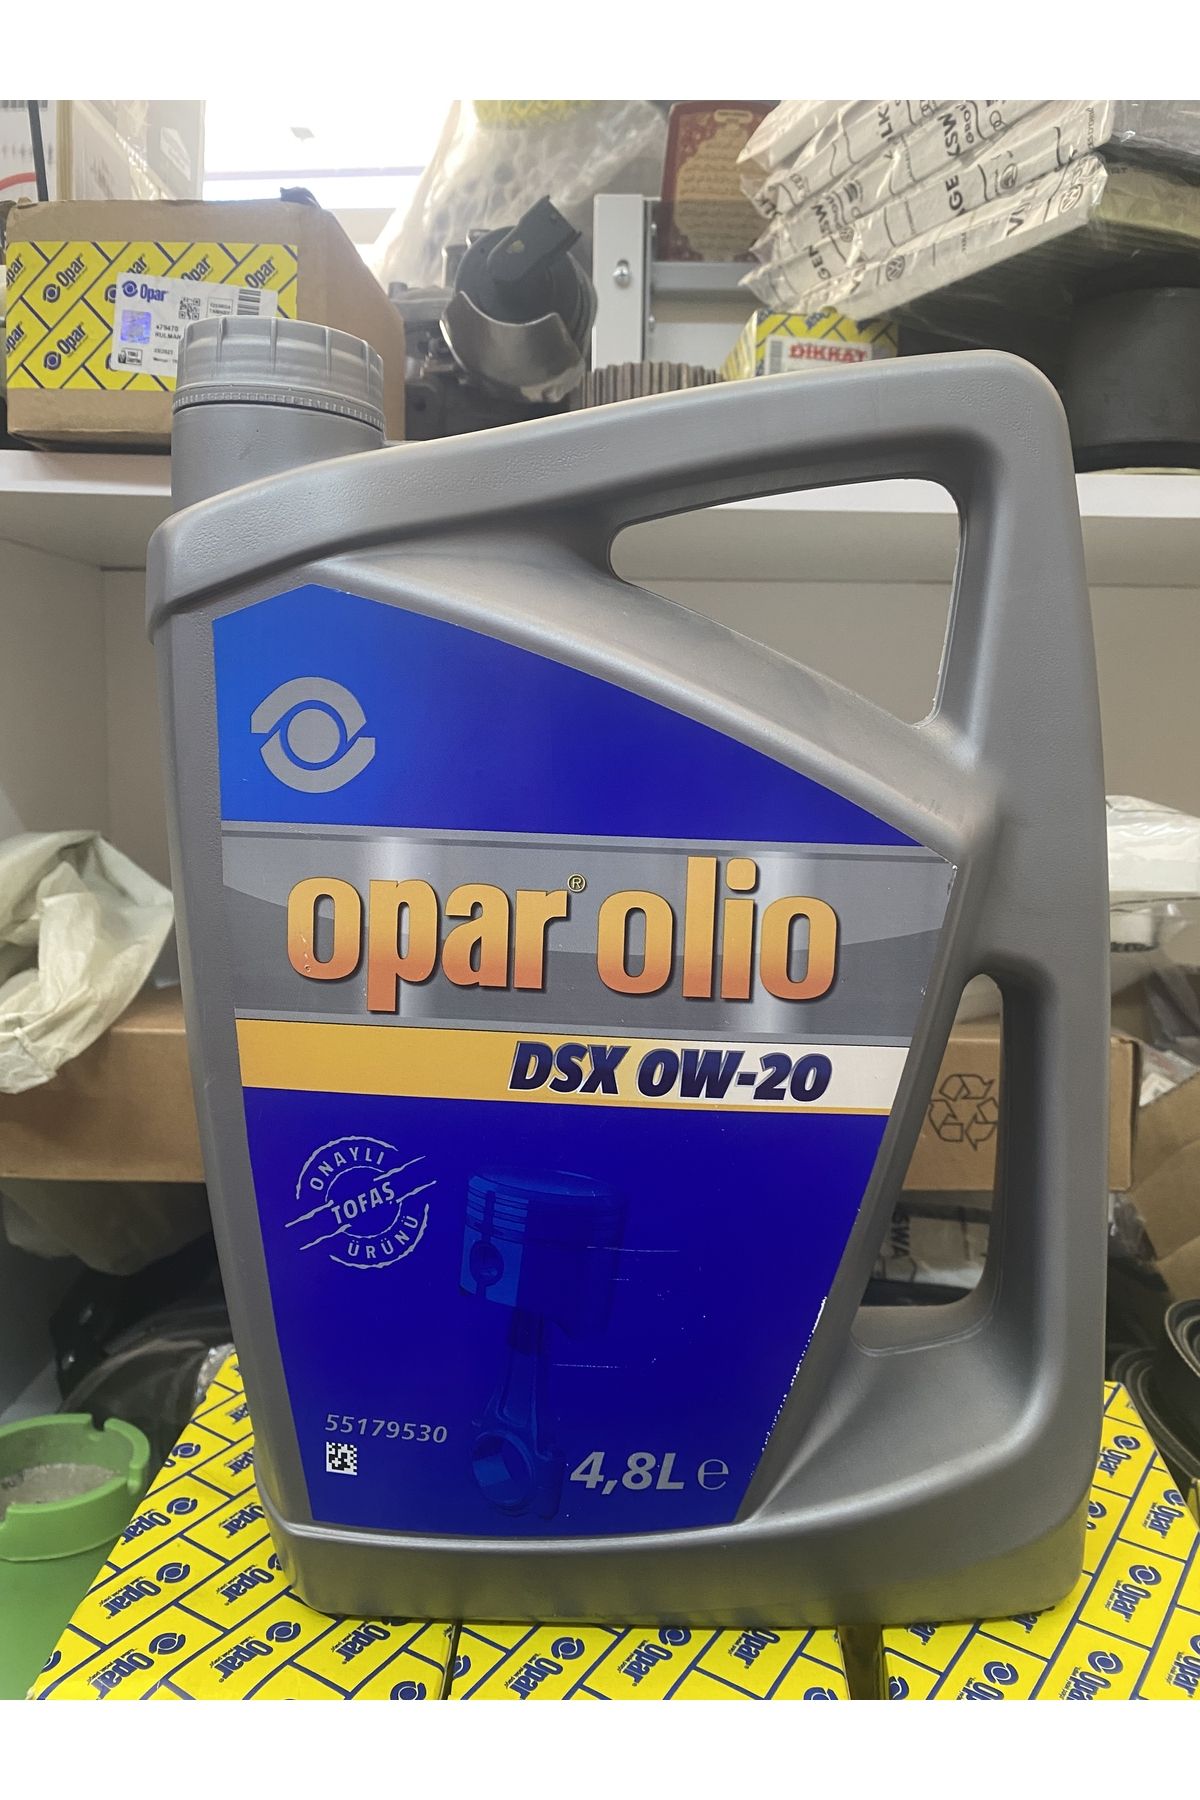 Opar Olio Dsx 0w20 4.8 Lt - 55179530